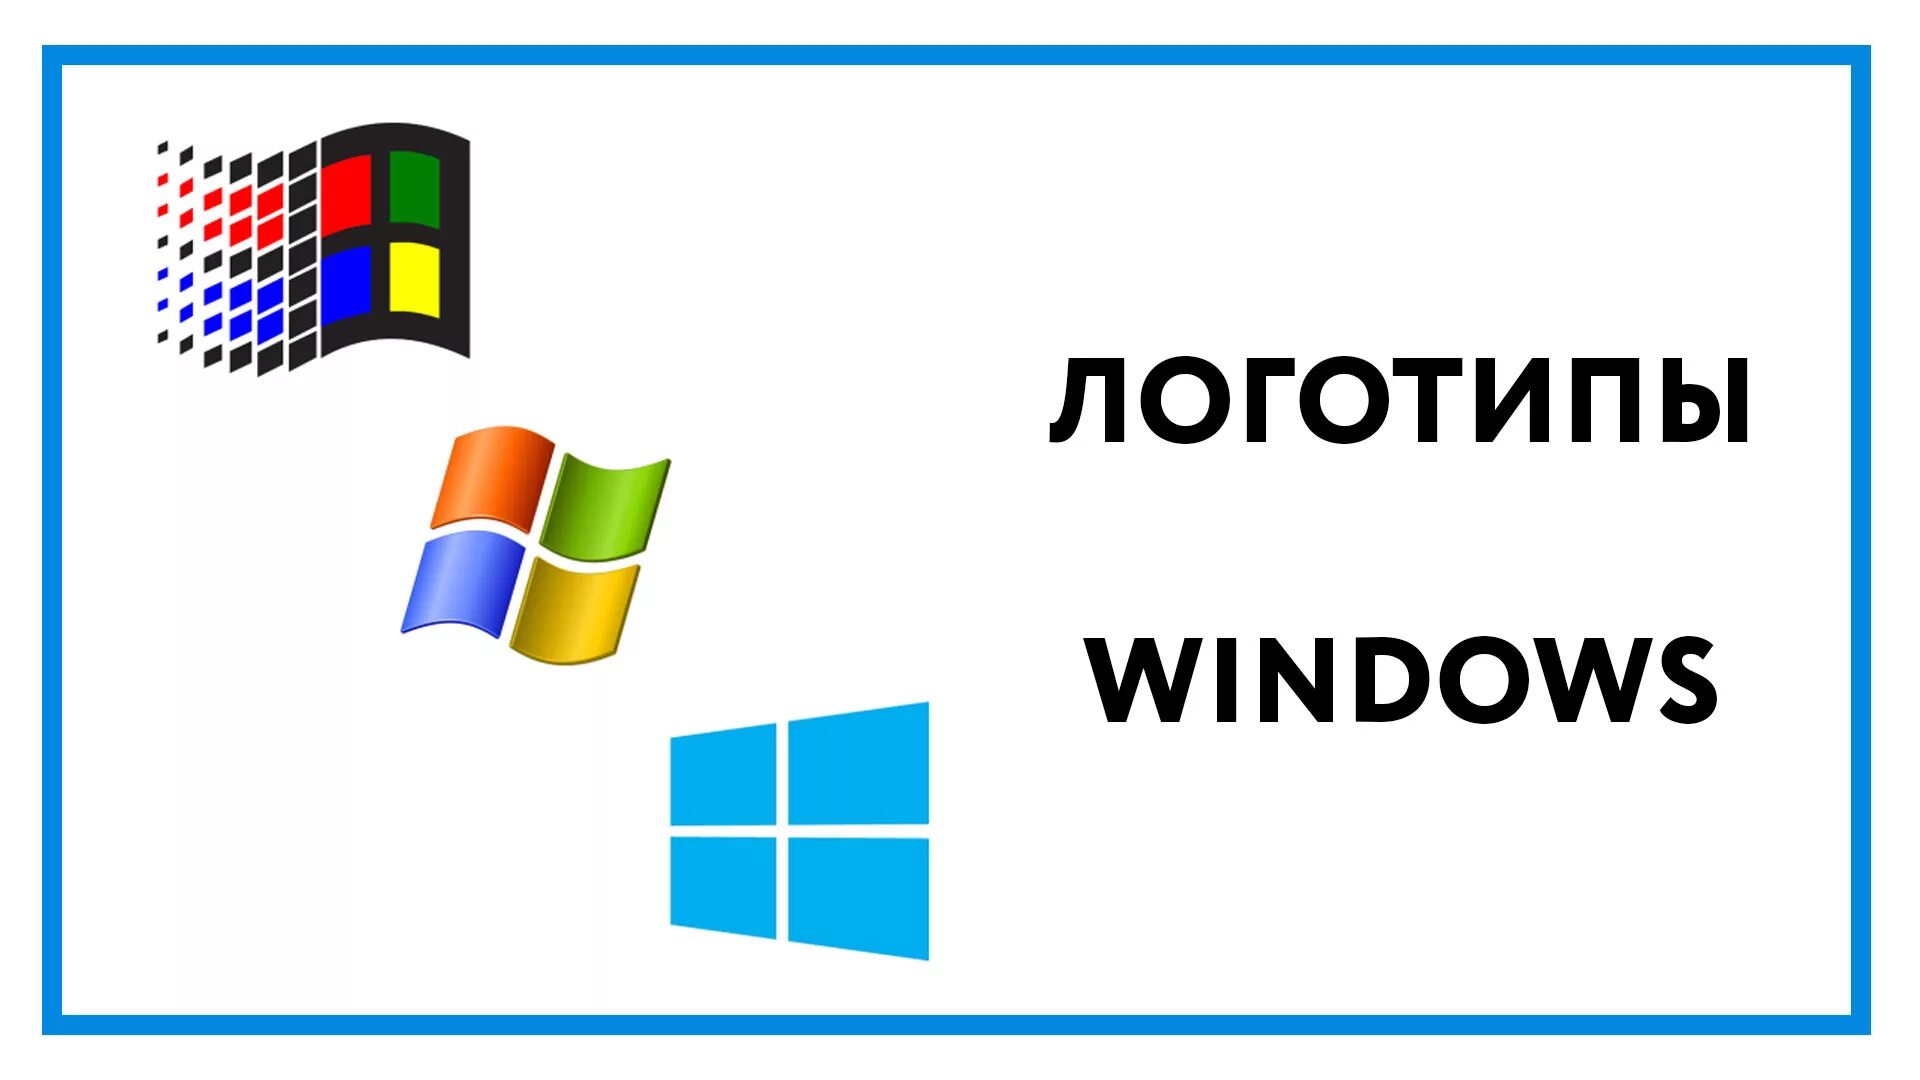 Появления windows. Логотип Windows. Эволюция логотипа Windows. Логотипы всех версий виндовс. Самый первый логотип Windows.